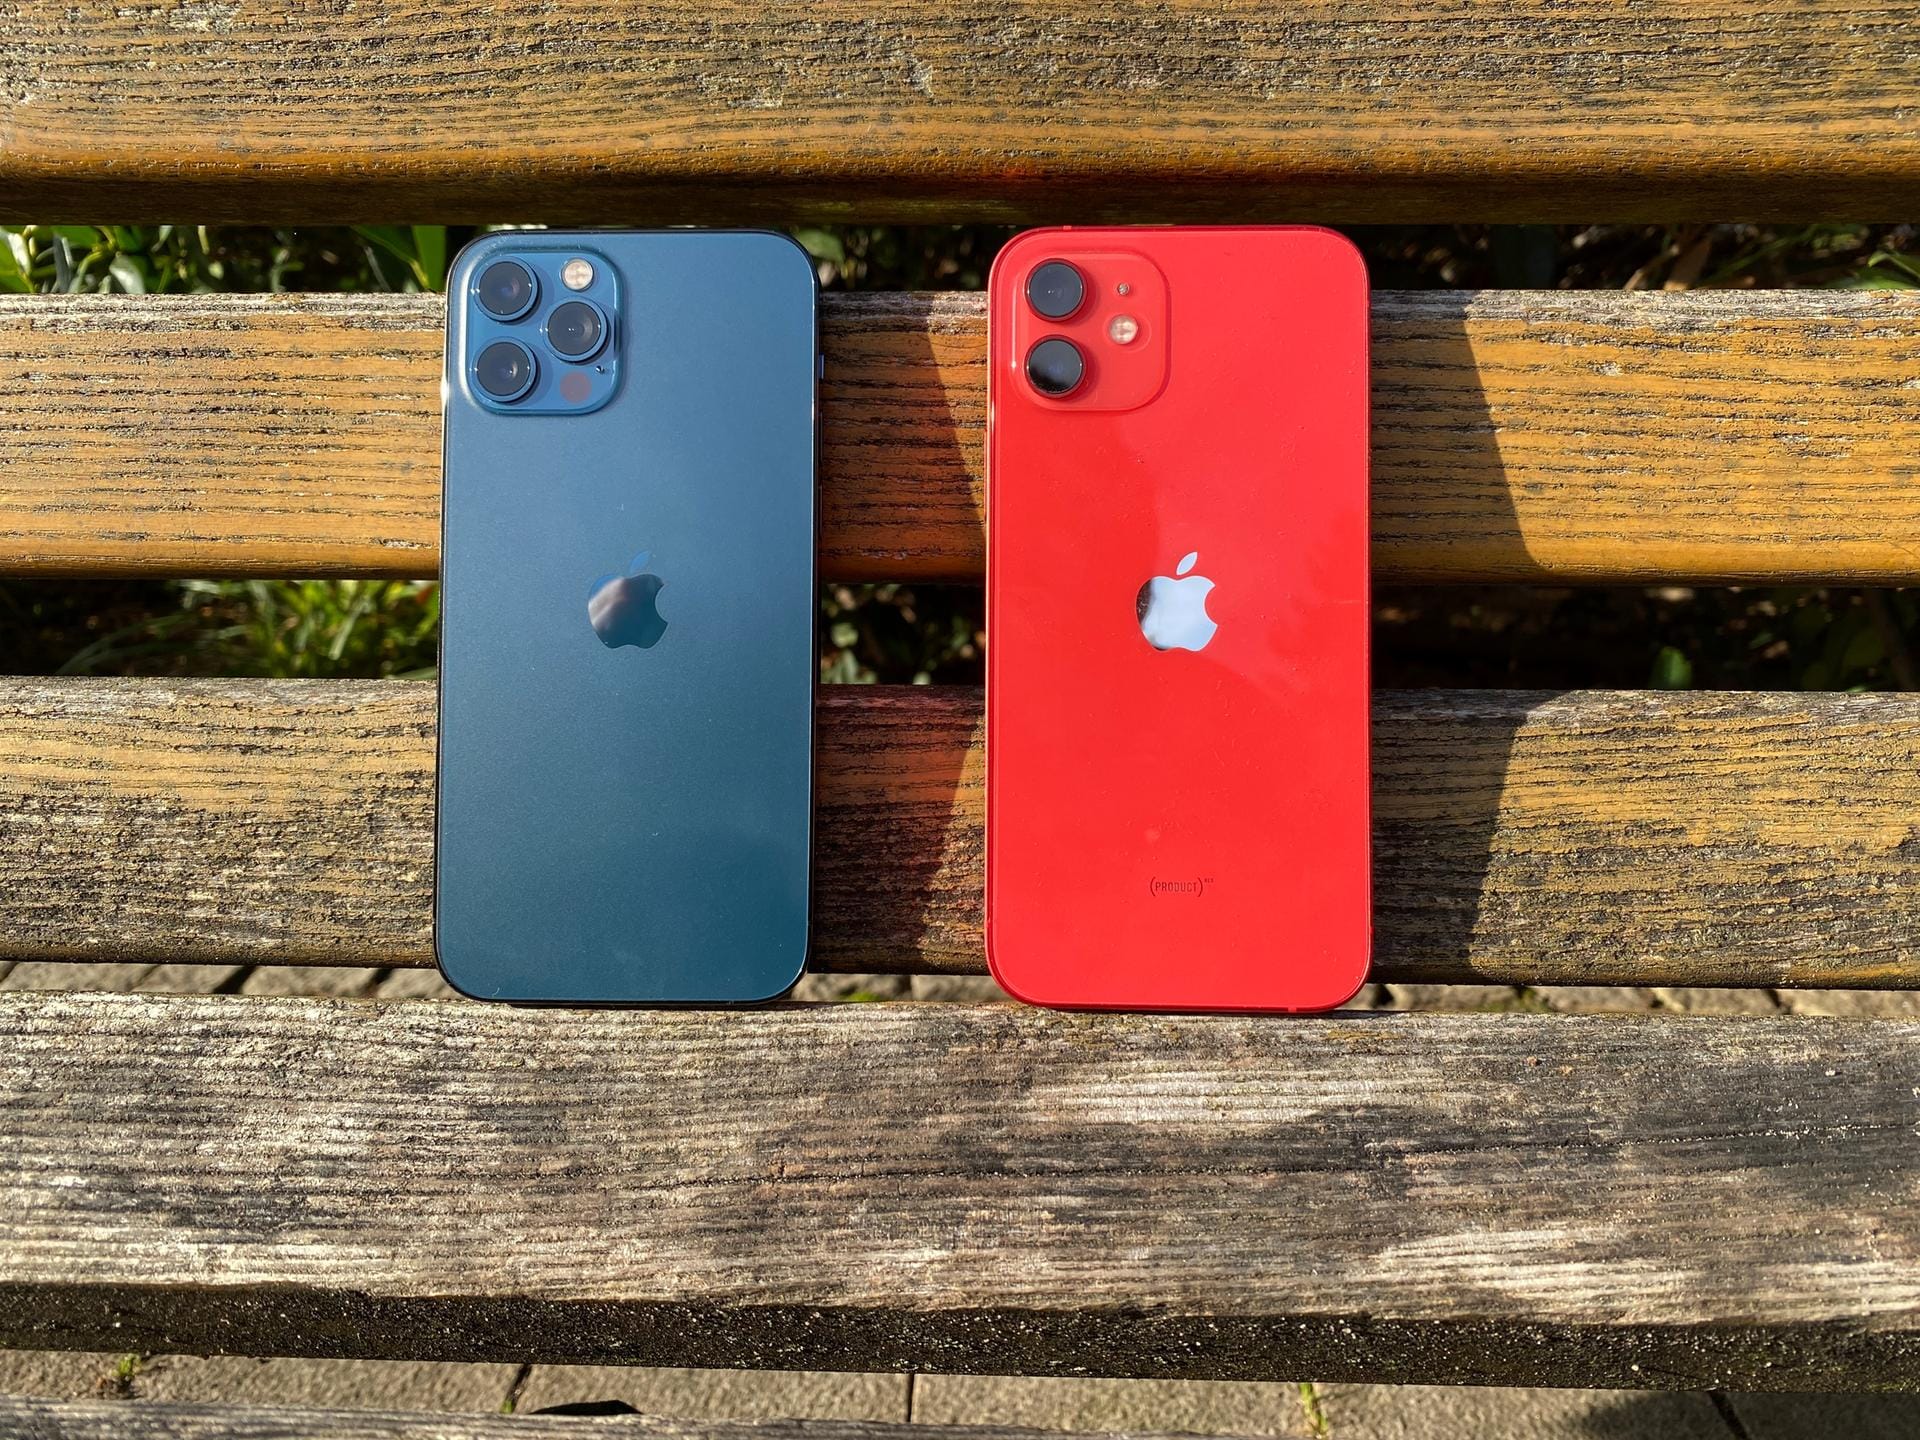 Das iPhone 12 Pro und iPhone 12 im Detail.